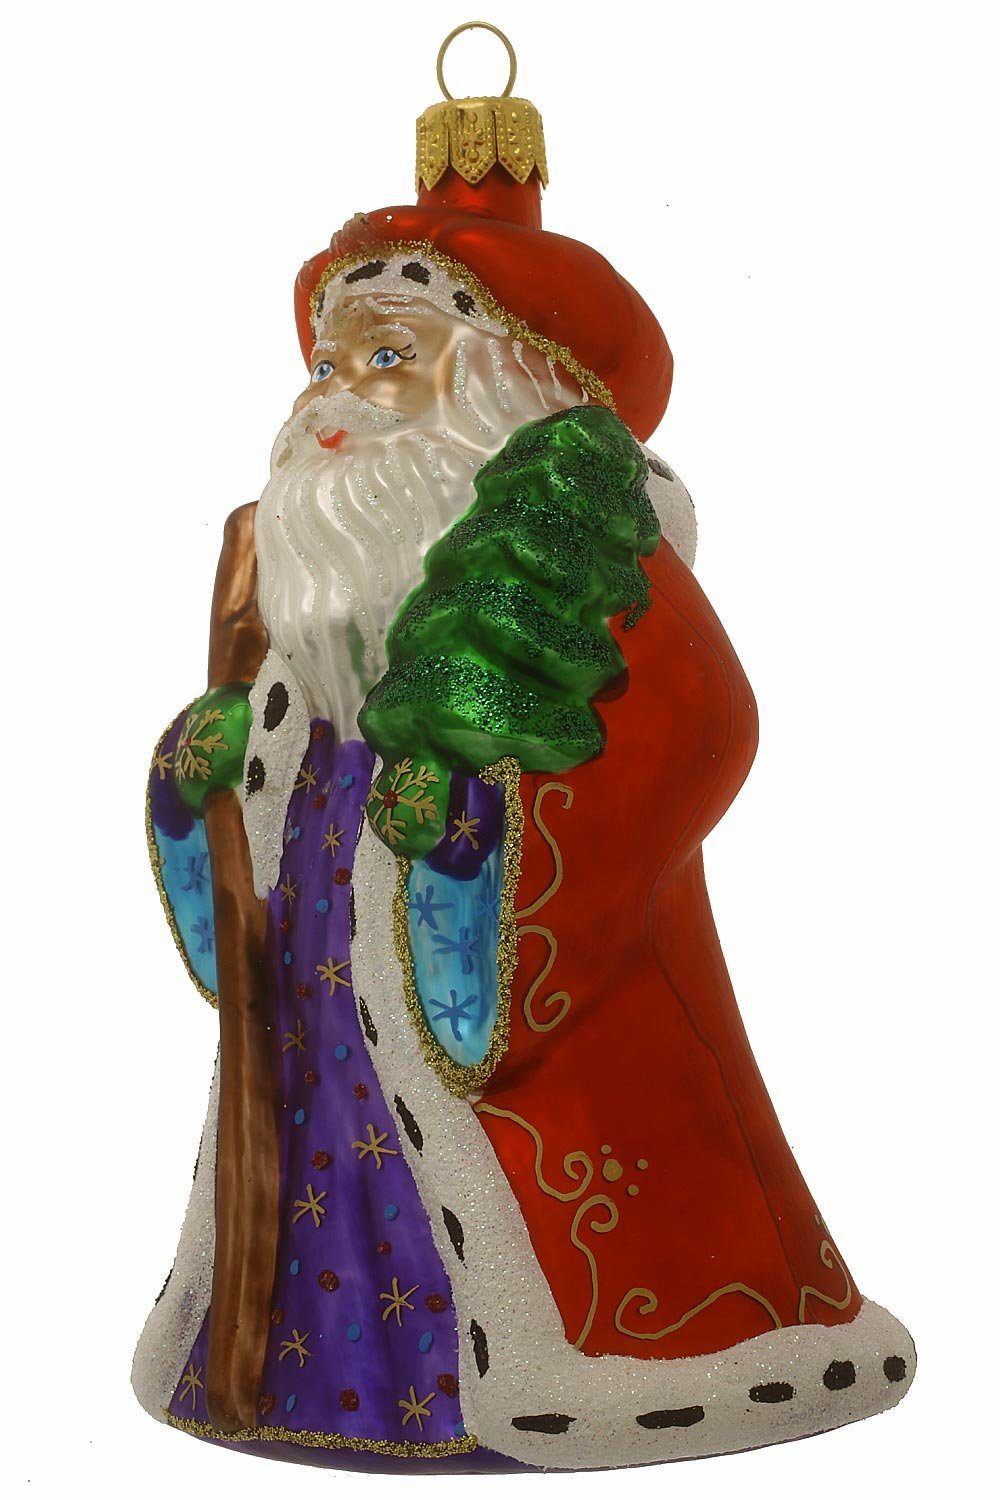 mitTannenbaum, handdekoriert Weihnachtskontor mundgeblasen - Christbaumschmuck Weihnachtsmann Hamburger - Dekohänger